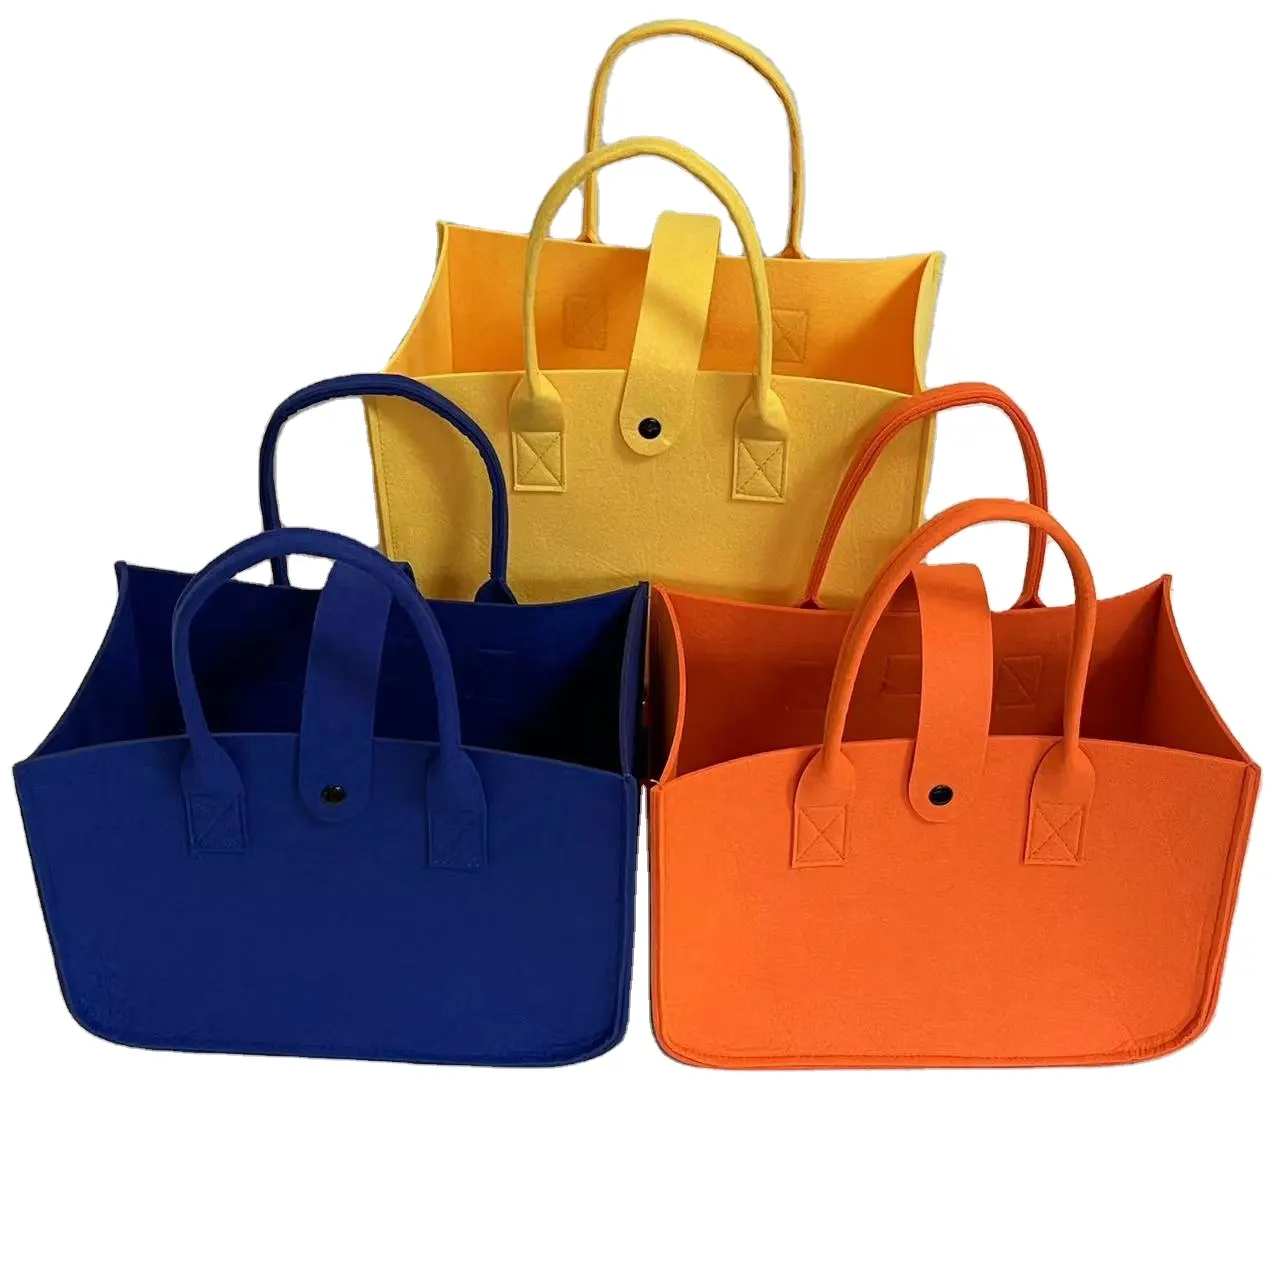 Bolsas de compras femininas de feltro casuais baratas por atacado, sacolas de compras em feltro coloridas com logotipo personalizado em tecido ecológico